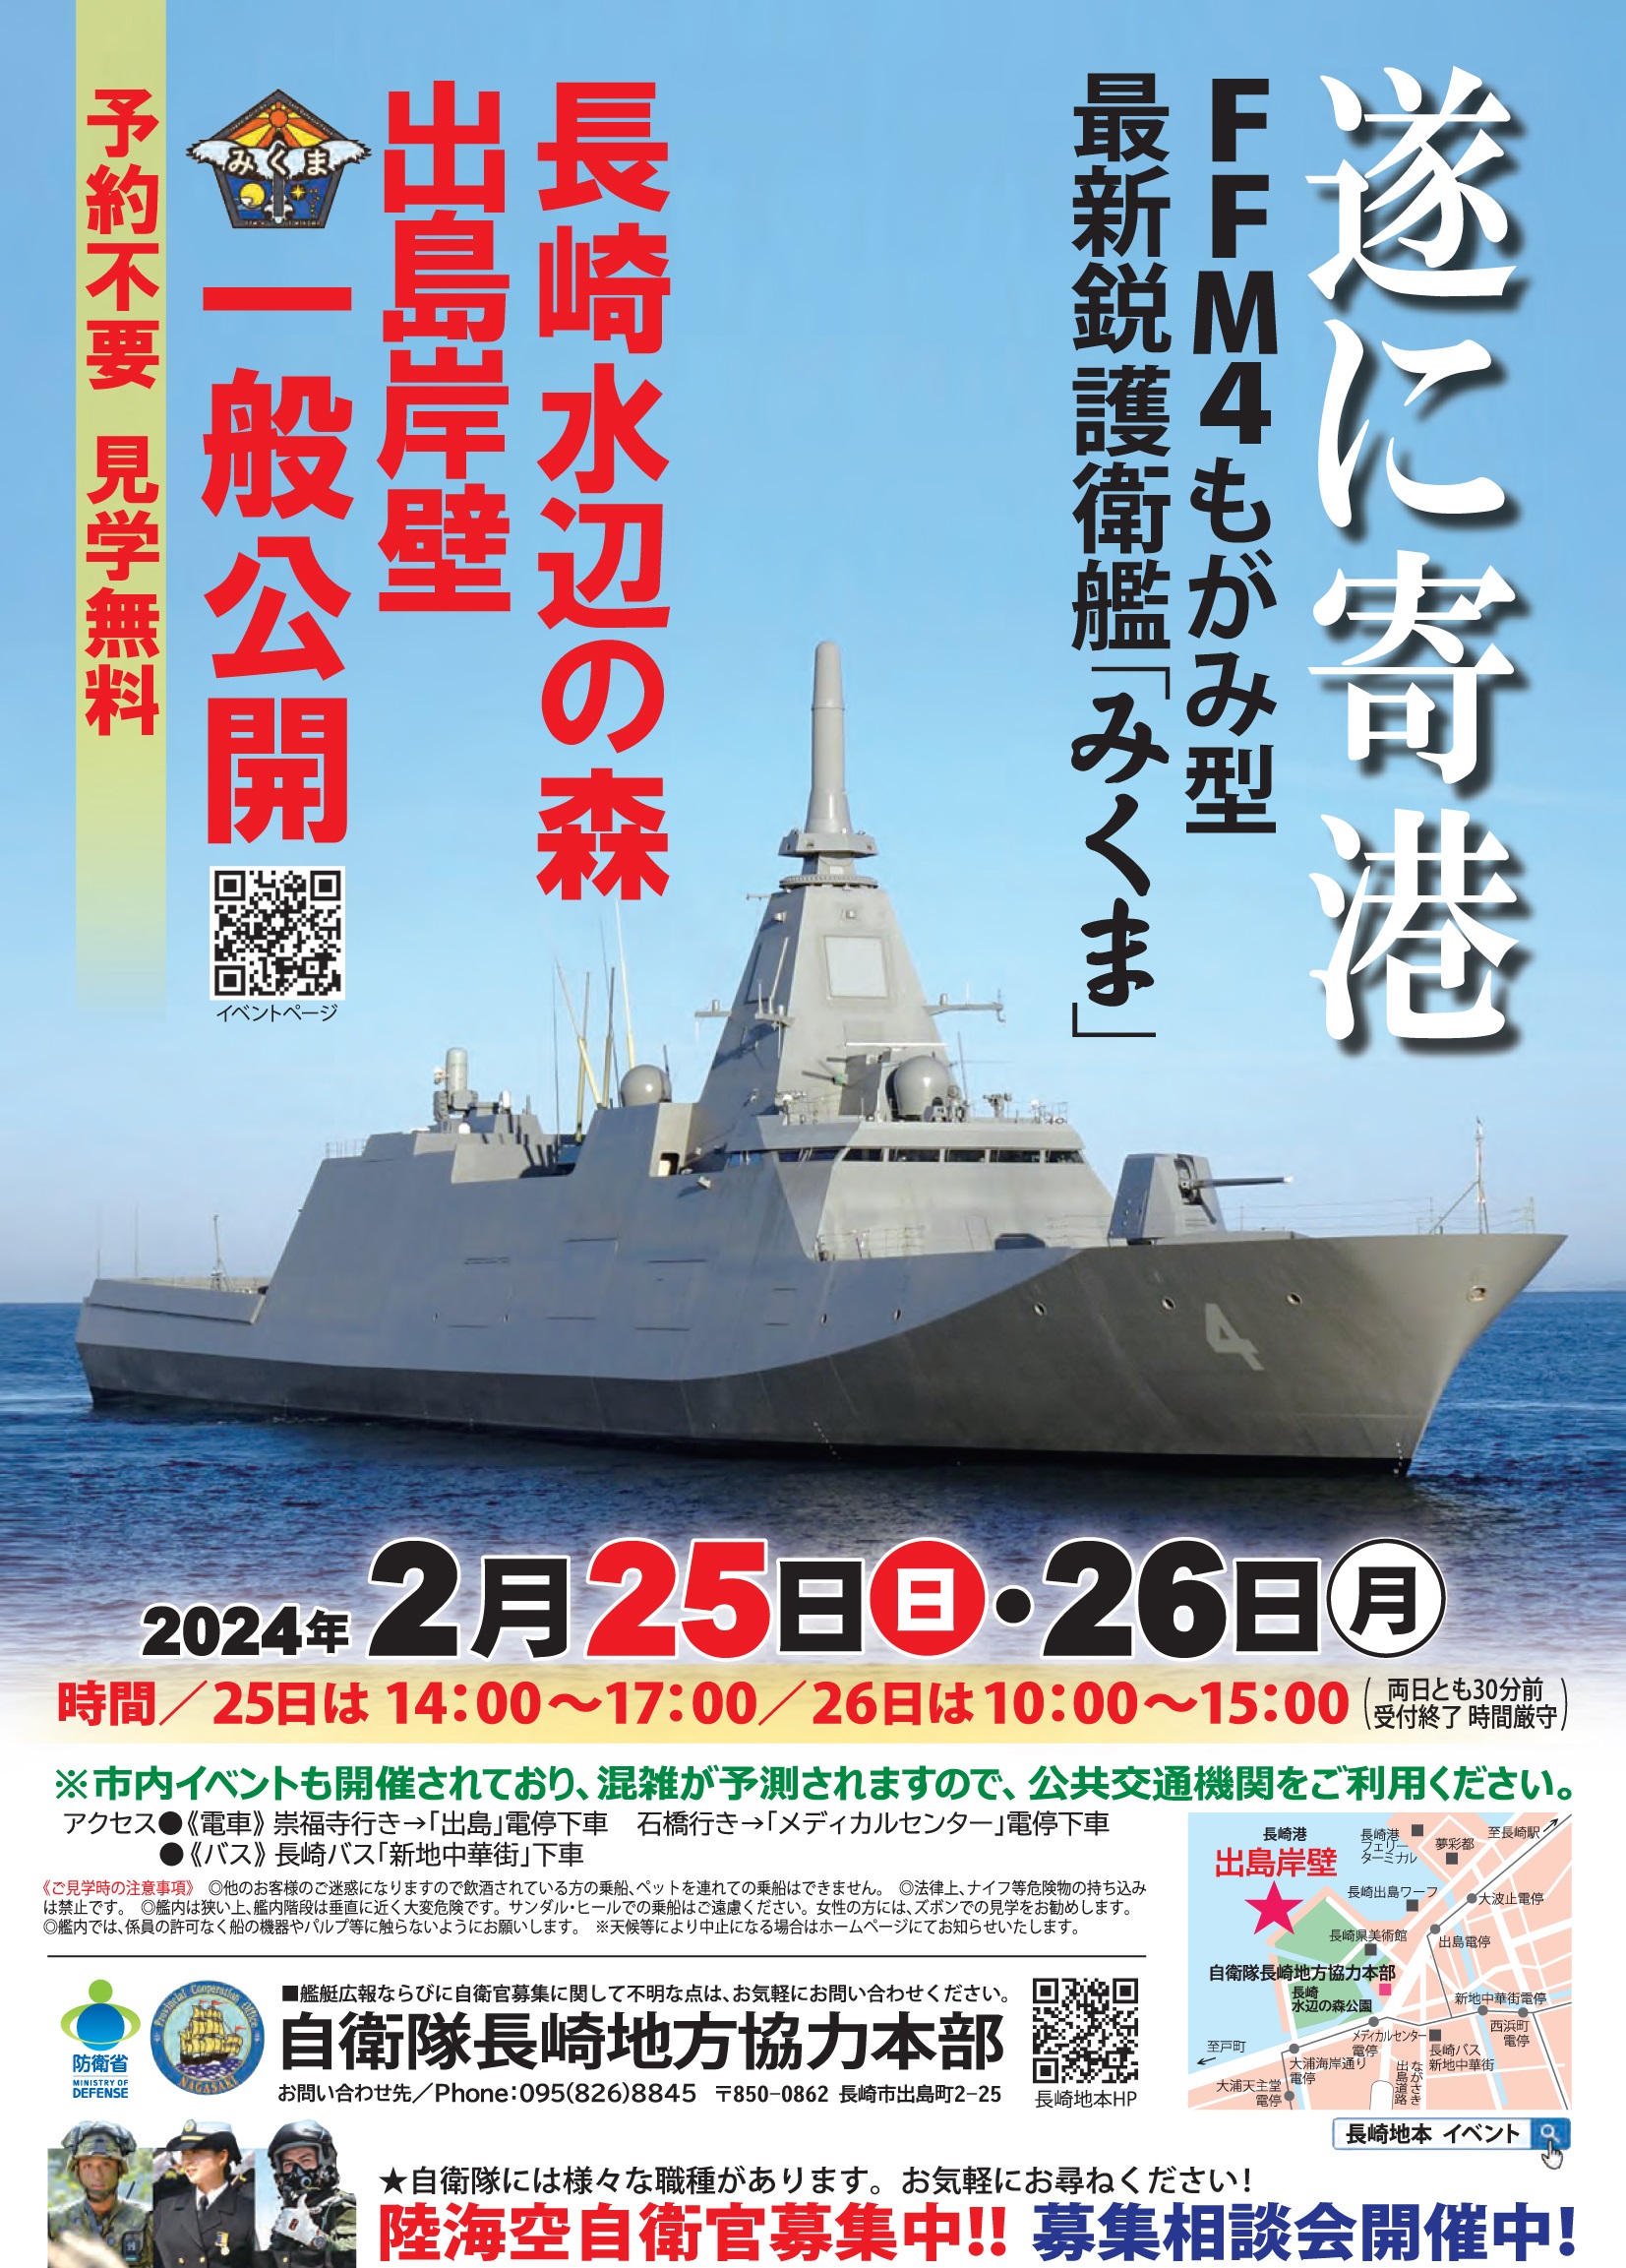 海上自衛隊 護衛艦「みくま」一般公開 in 出島岸壁：ポスター